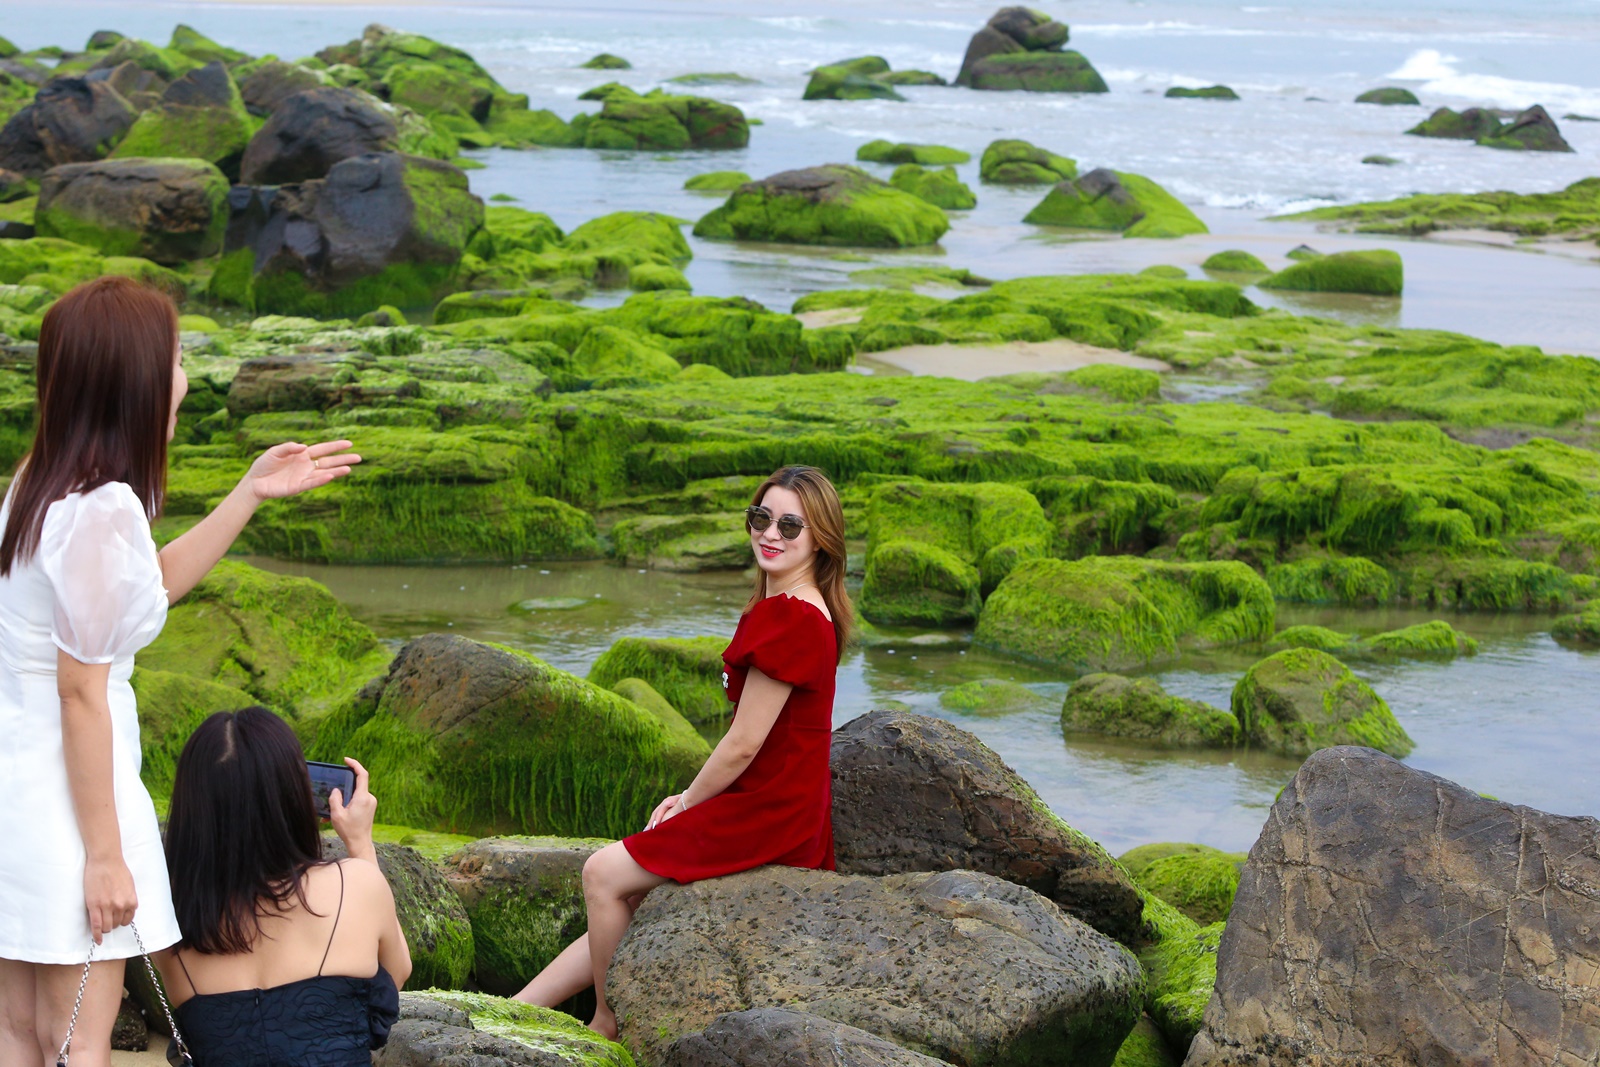 Ảnh: Chen chân chụp ảnh bãi rêu tuyệt đẹp ven biển Đà Nẵng - Ảnh 5.